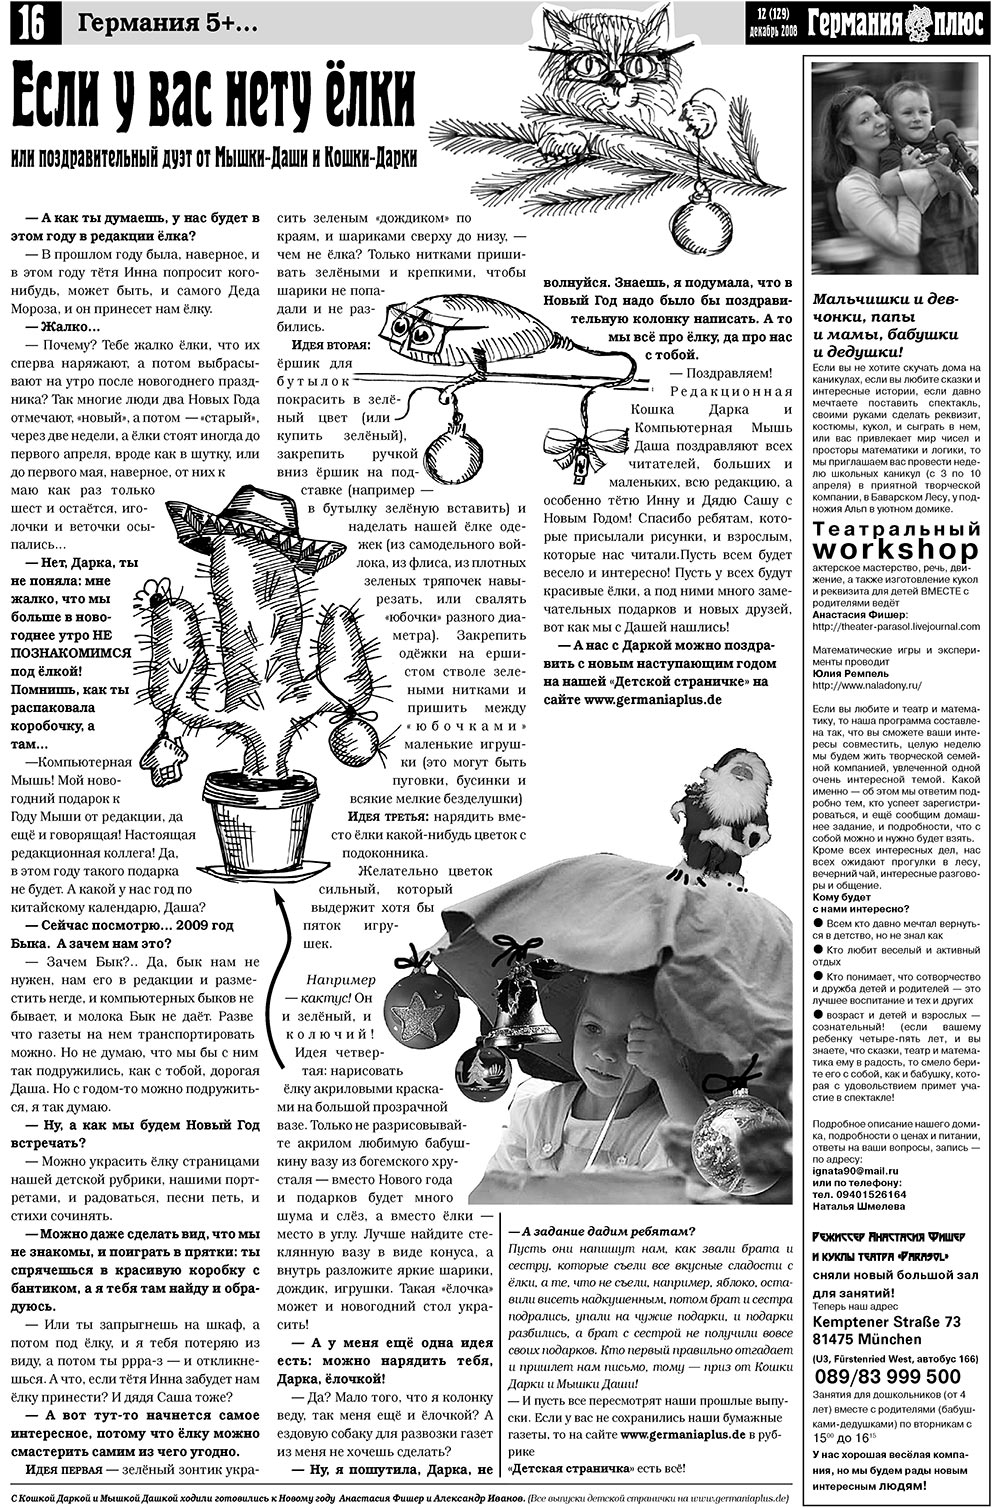 Германия плюс, газета. 2008 №12 стр.20